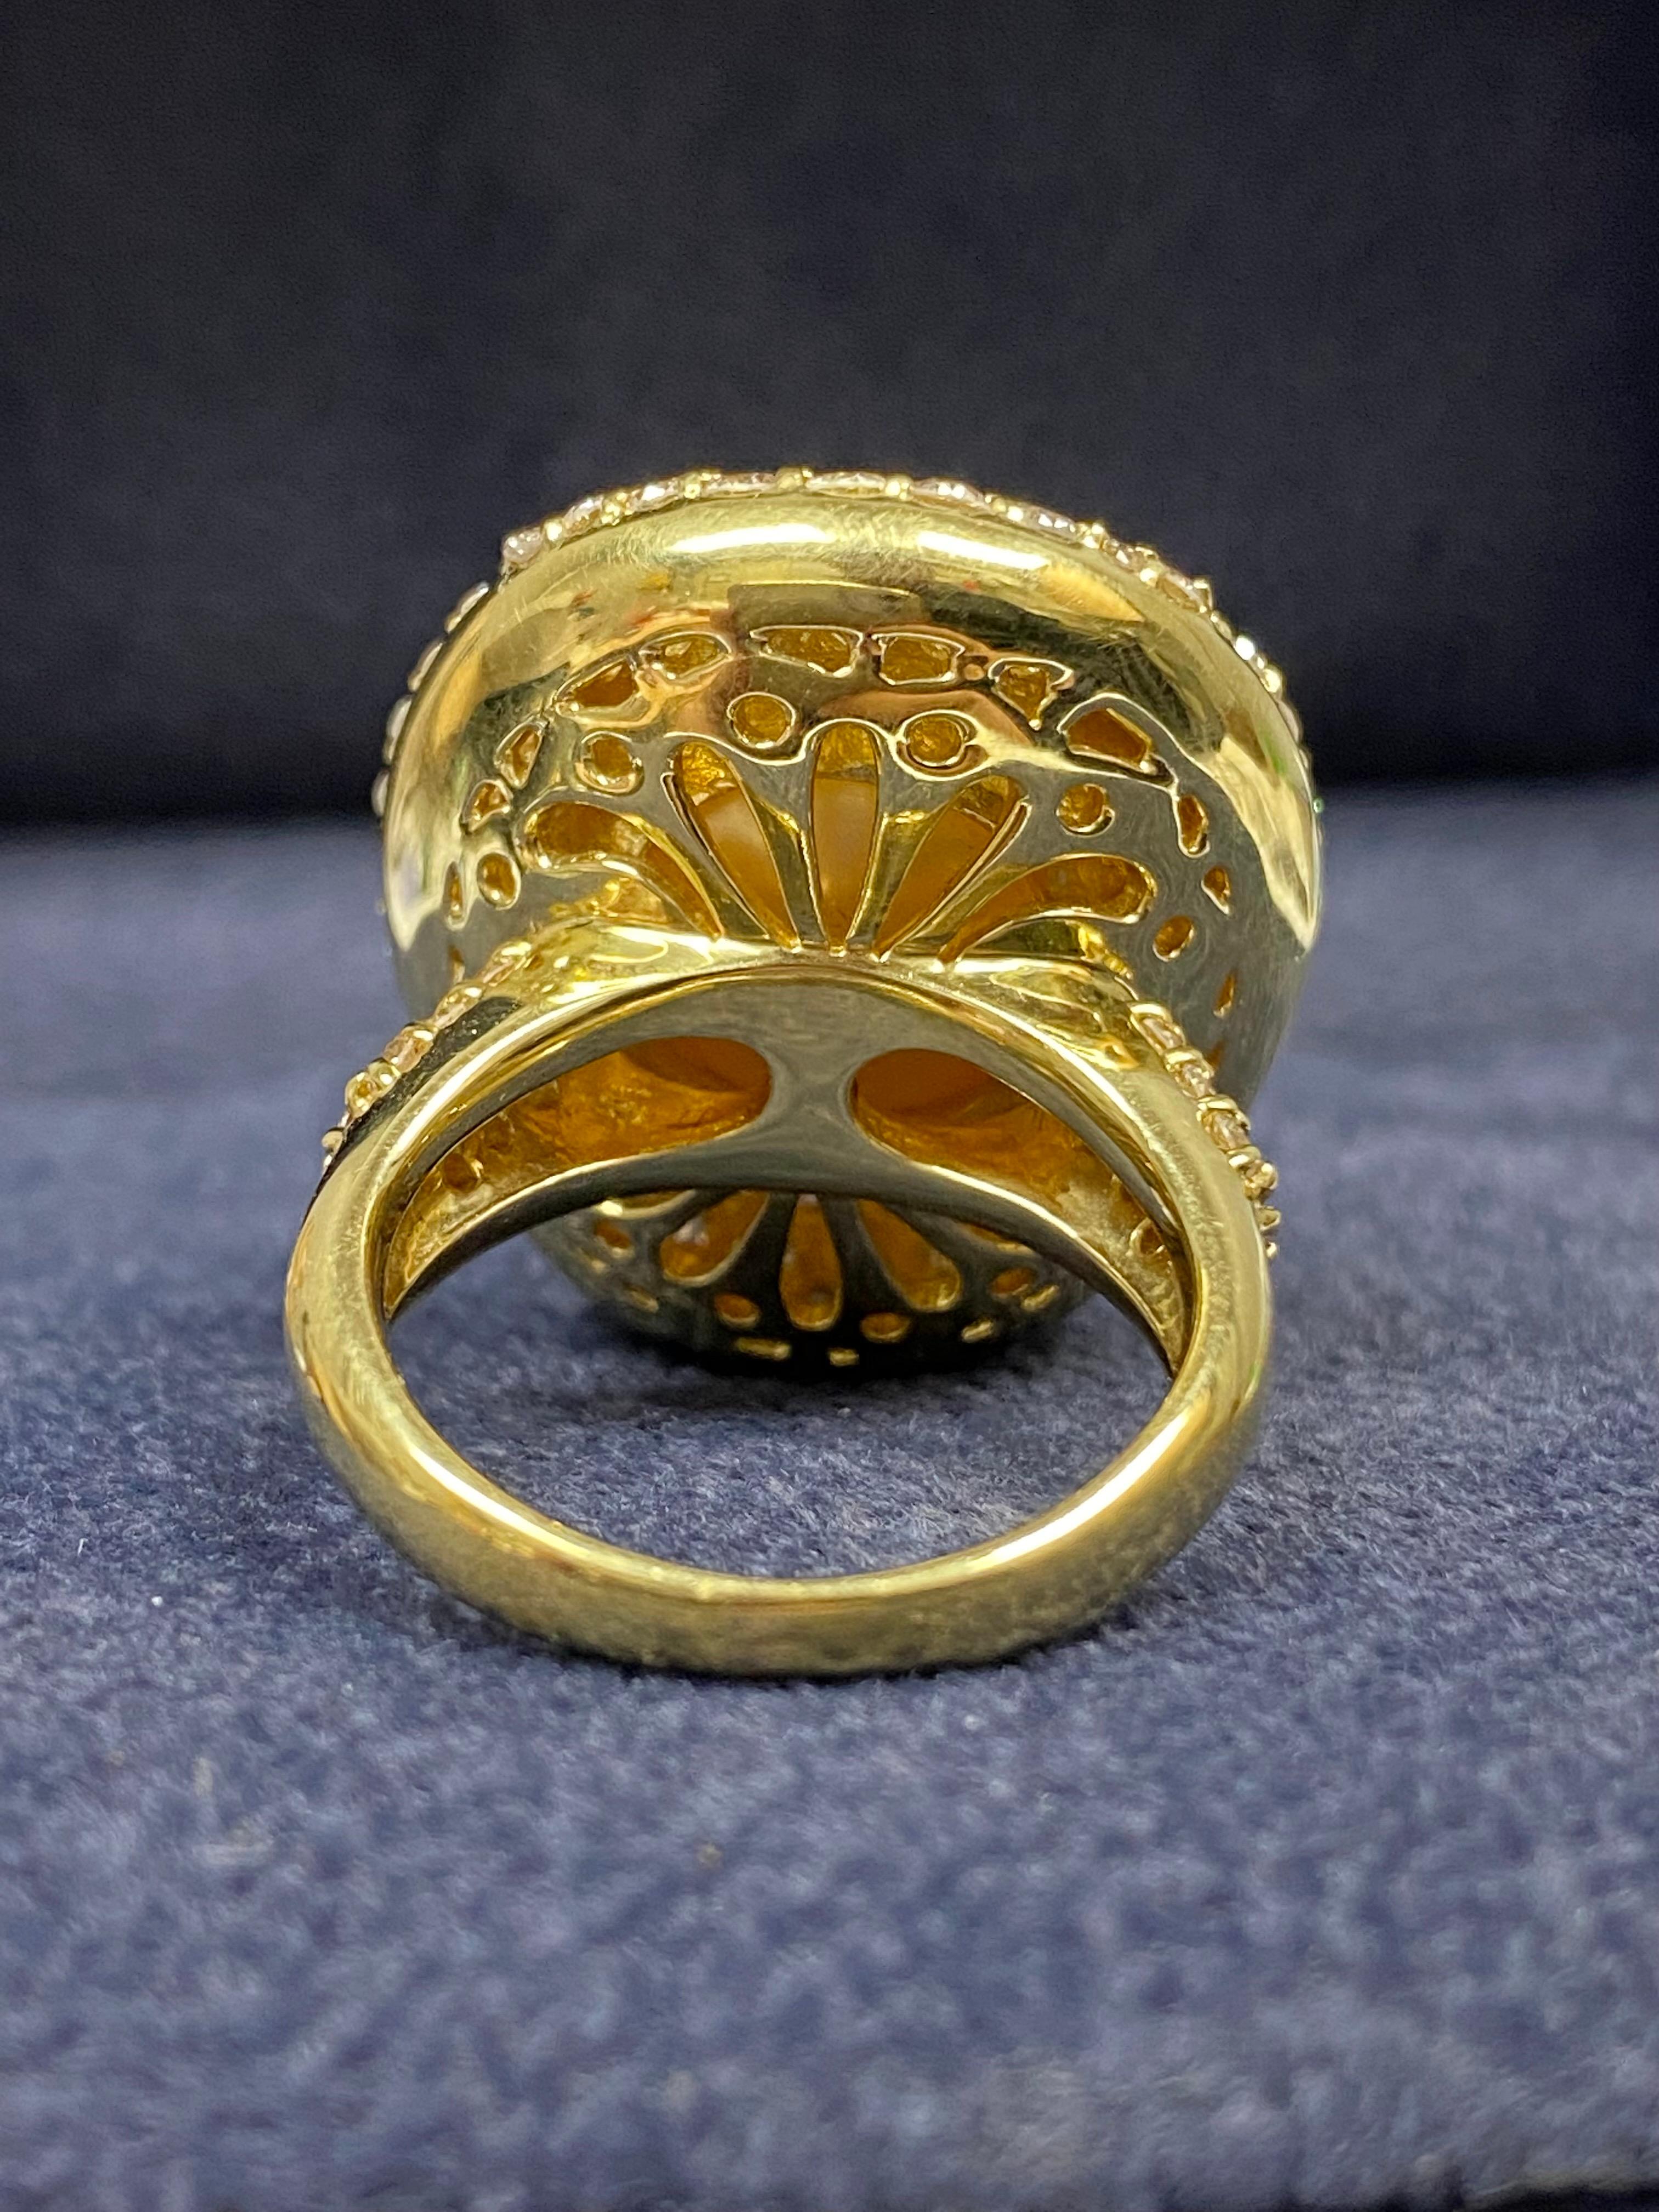 ring aus 18 Karat Gelbgold, besetzt mit einer 14,3 mm großen goldenen Perle und 2,77 Karat natürlichen Diamanten. Ein prächtiger Ring mit einer ebenso prächtigen Perle. Die Perle hat 

Perlen-Details:
✔ SouthSea Pearl
✔ 14.3mm Perle
✔ Glanz: Sehr